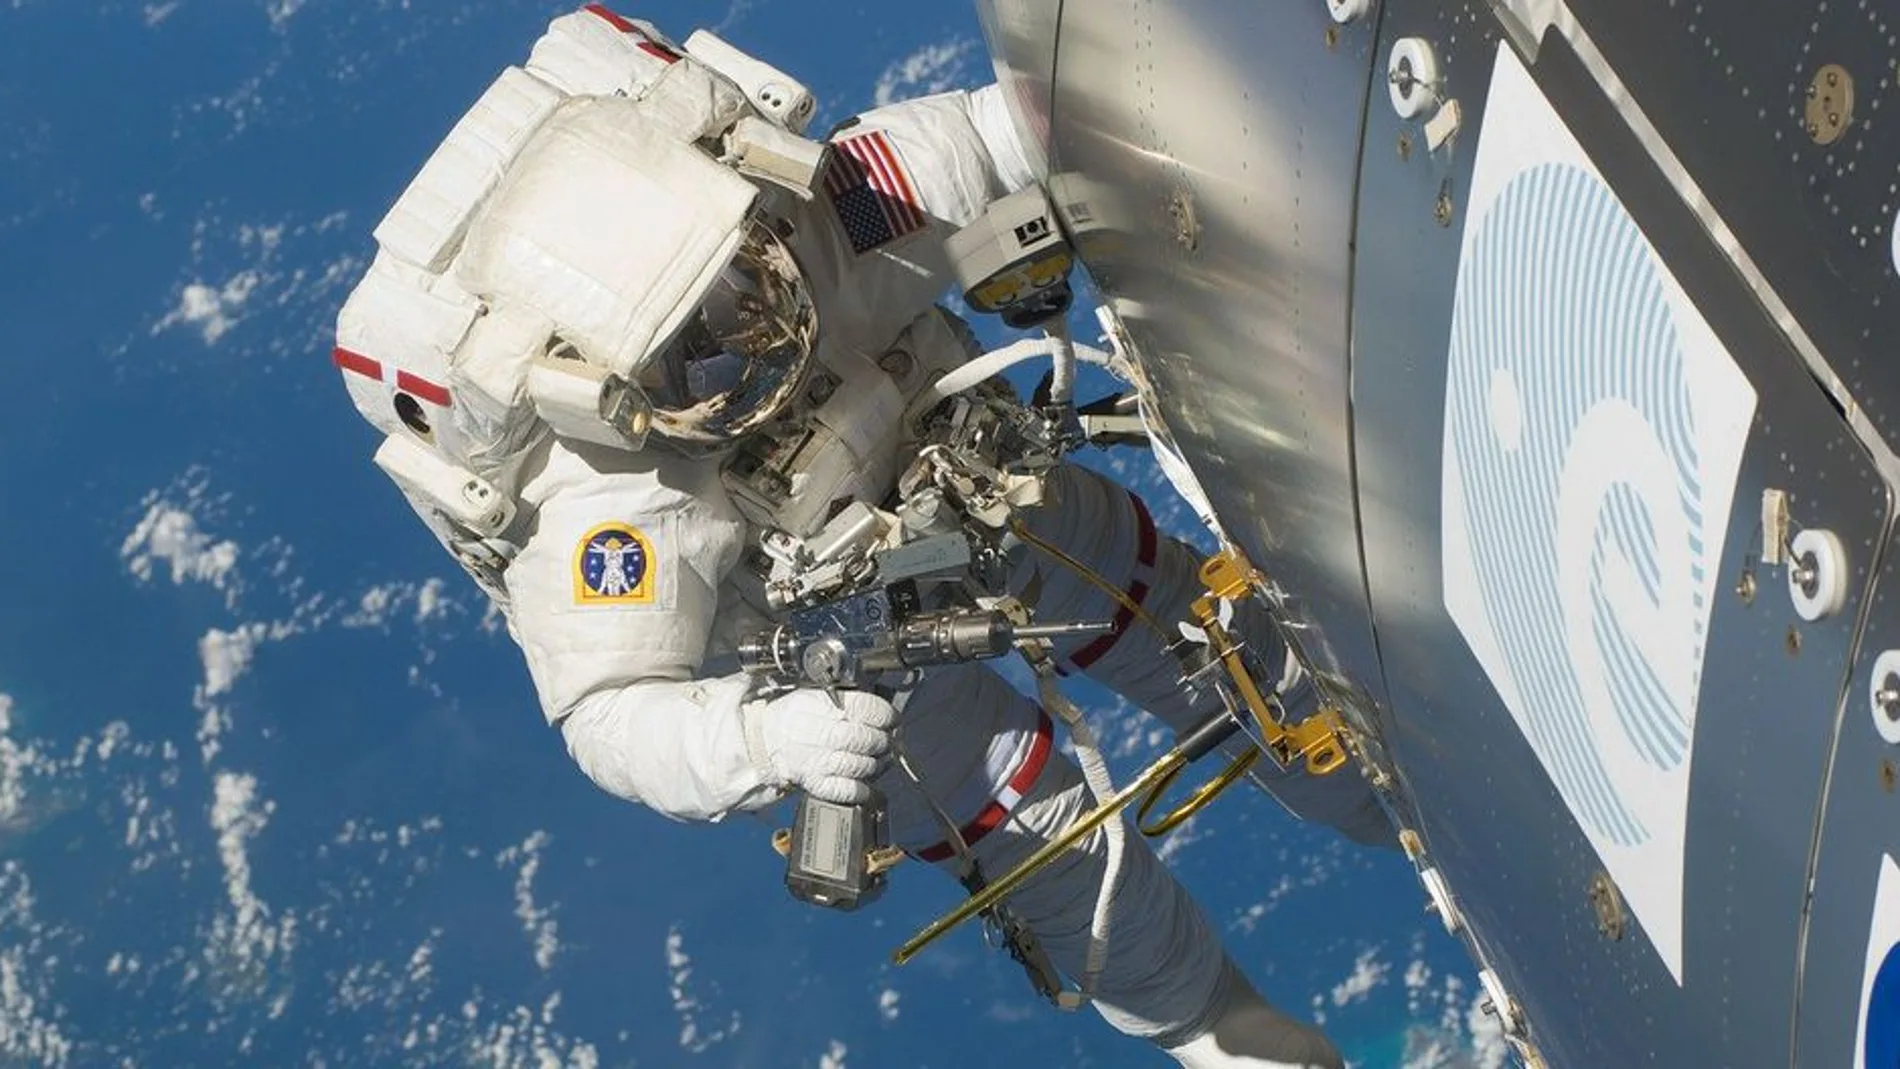 El cuerpo humano está sometido a condiciones límite en el espacio / NASA